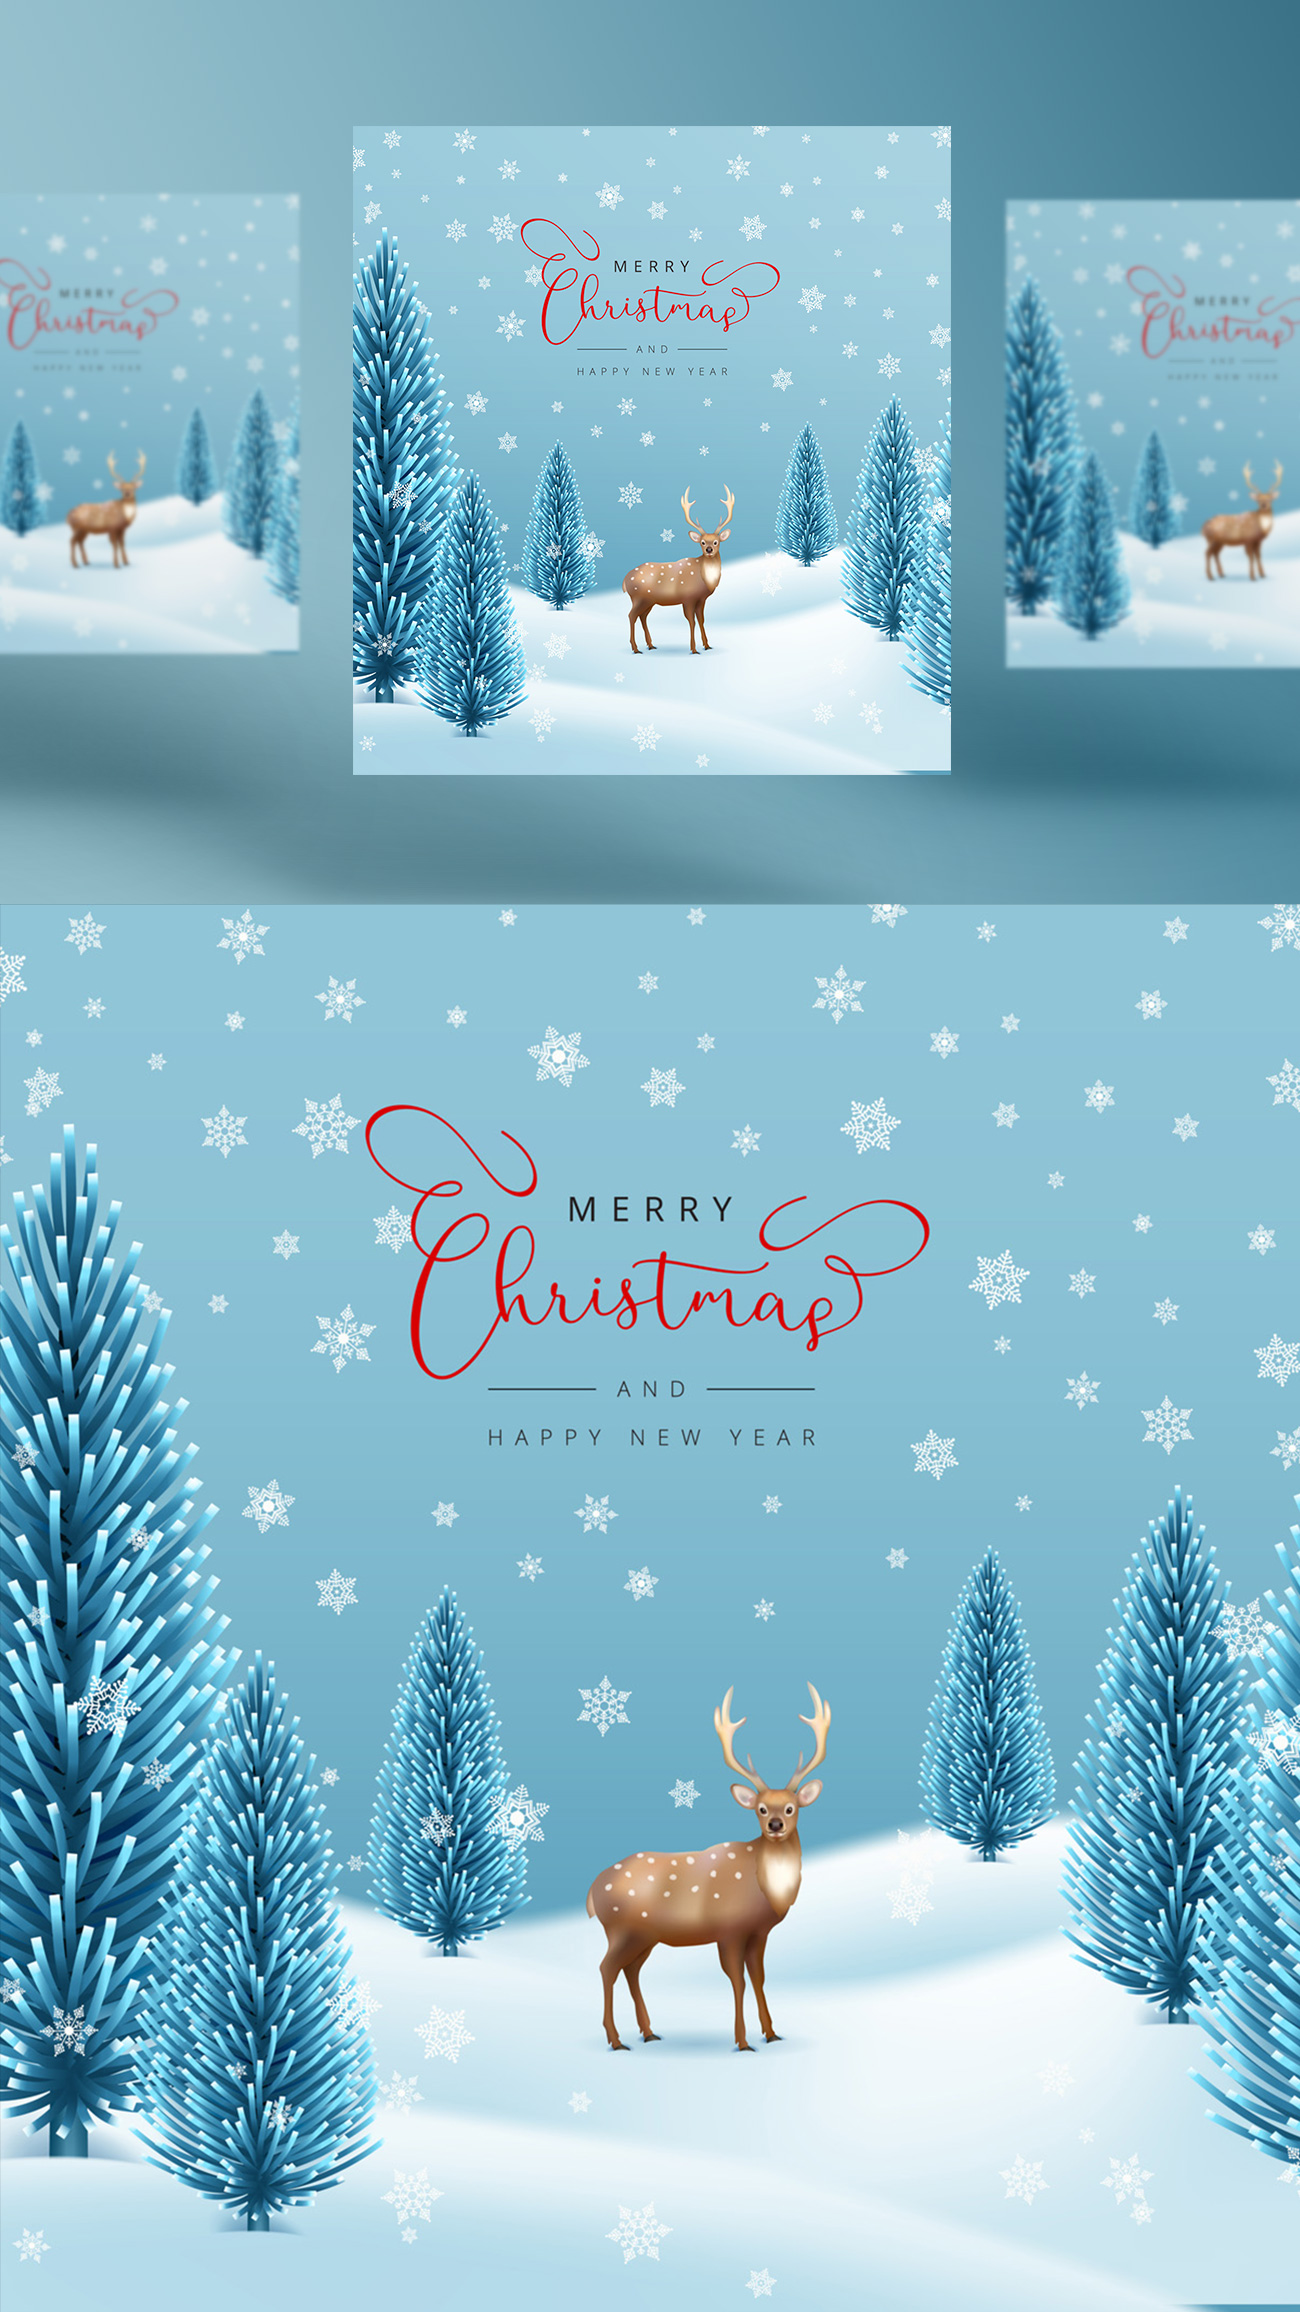 淡蓝色精美圣诞节主题新年海报EPS矢量模板素材